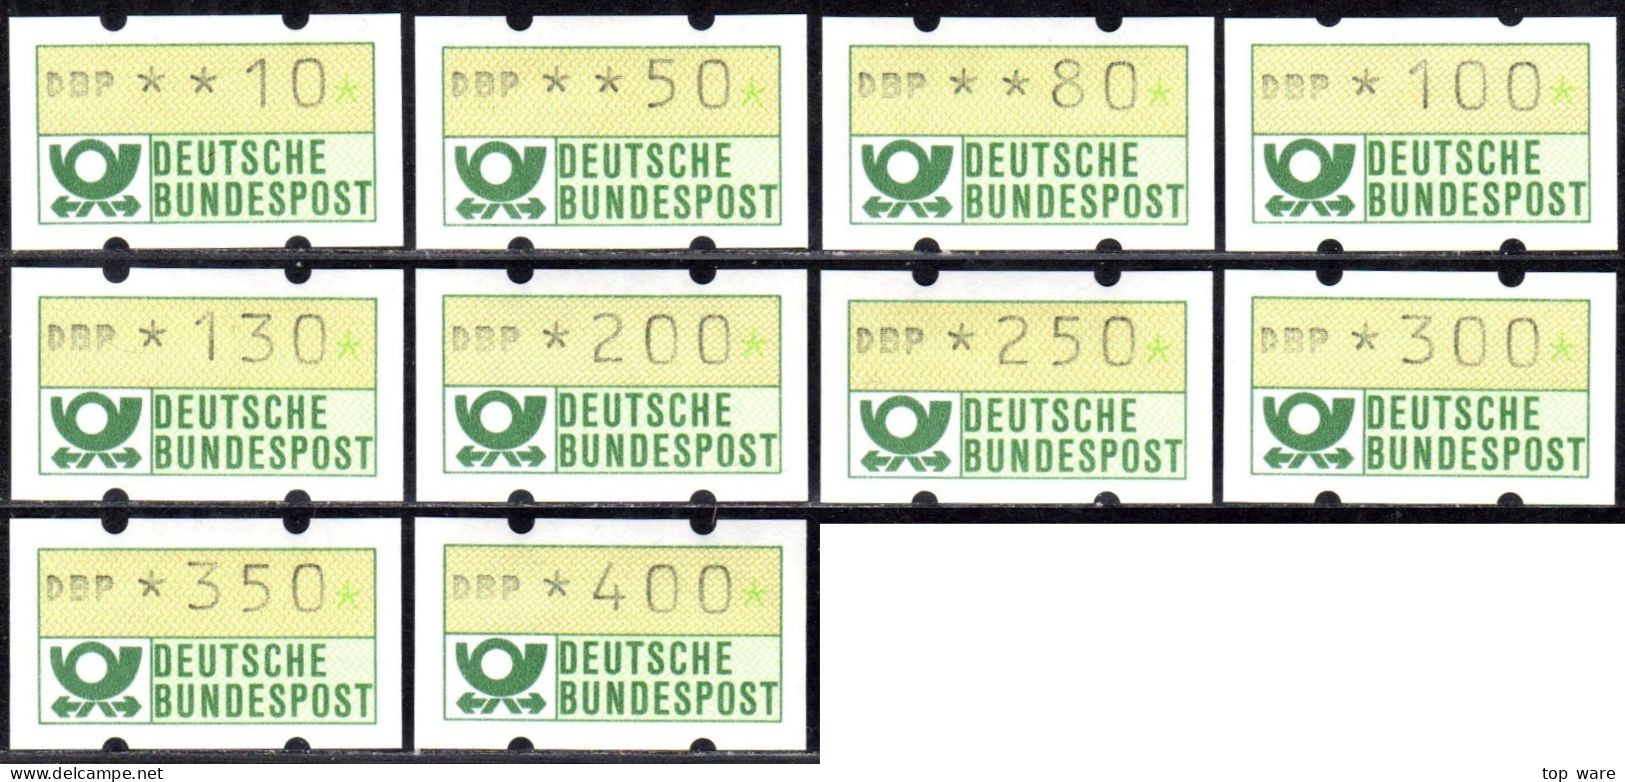 Deutschland Bund ATM 1.2 Hv Weißer Gummi Tastensatz TS7 10-400Pf. Postfrisch, Nagler Automatenmarken - Timbres De Distributeurs [ATM]